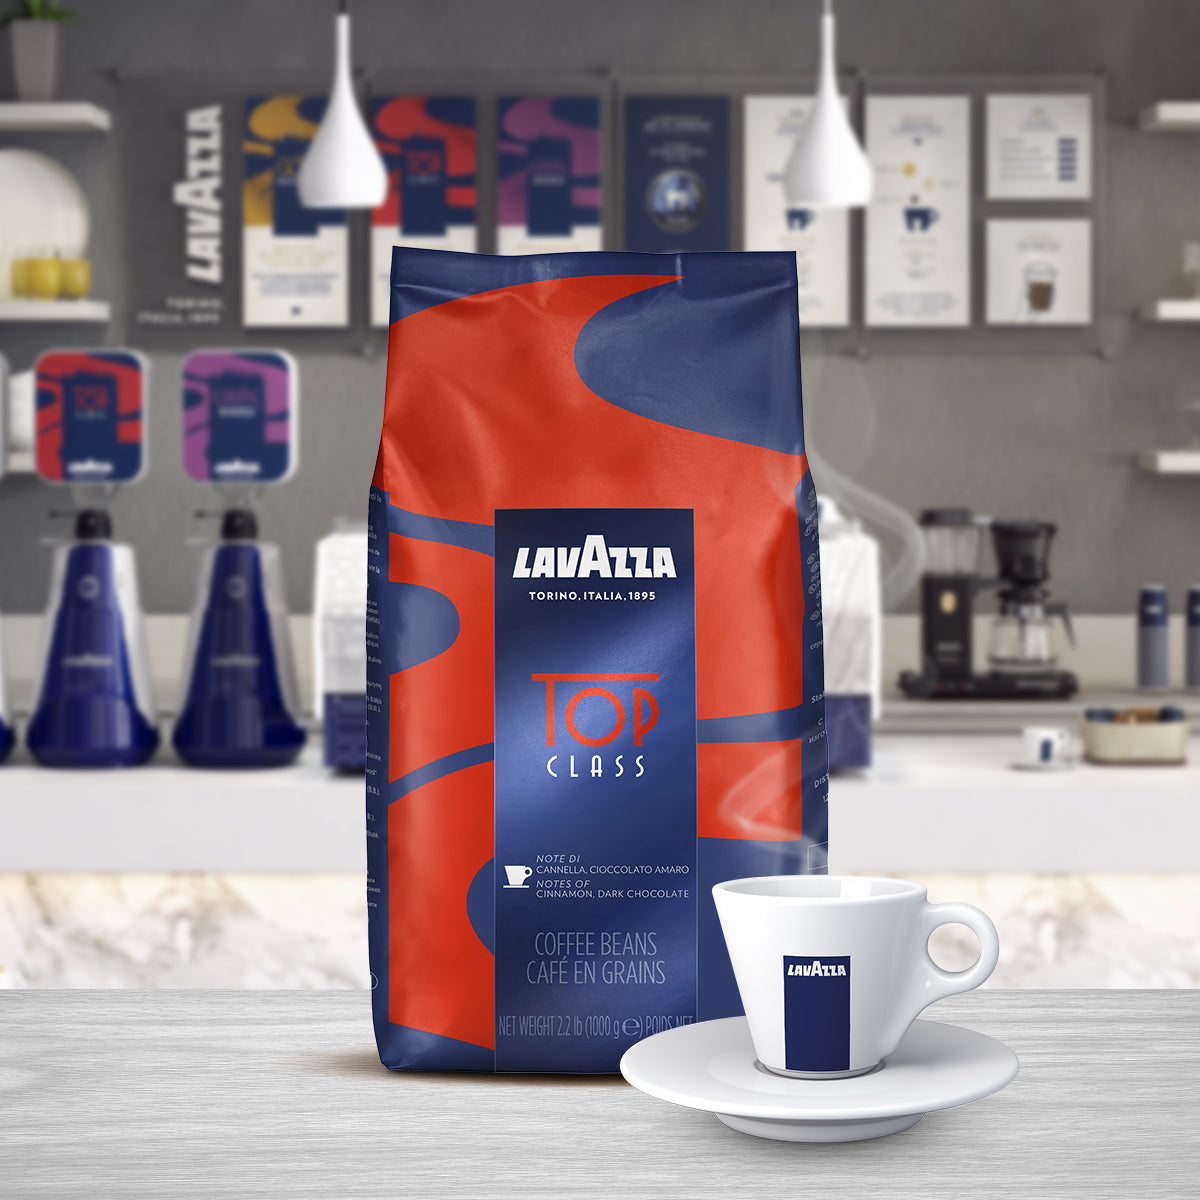 Lavazza Espresso Top Class Coffee Beans 1kg